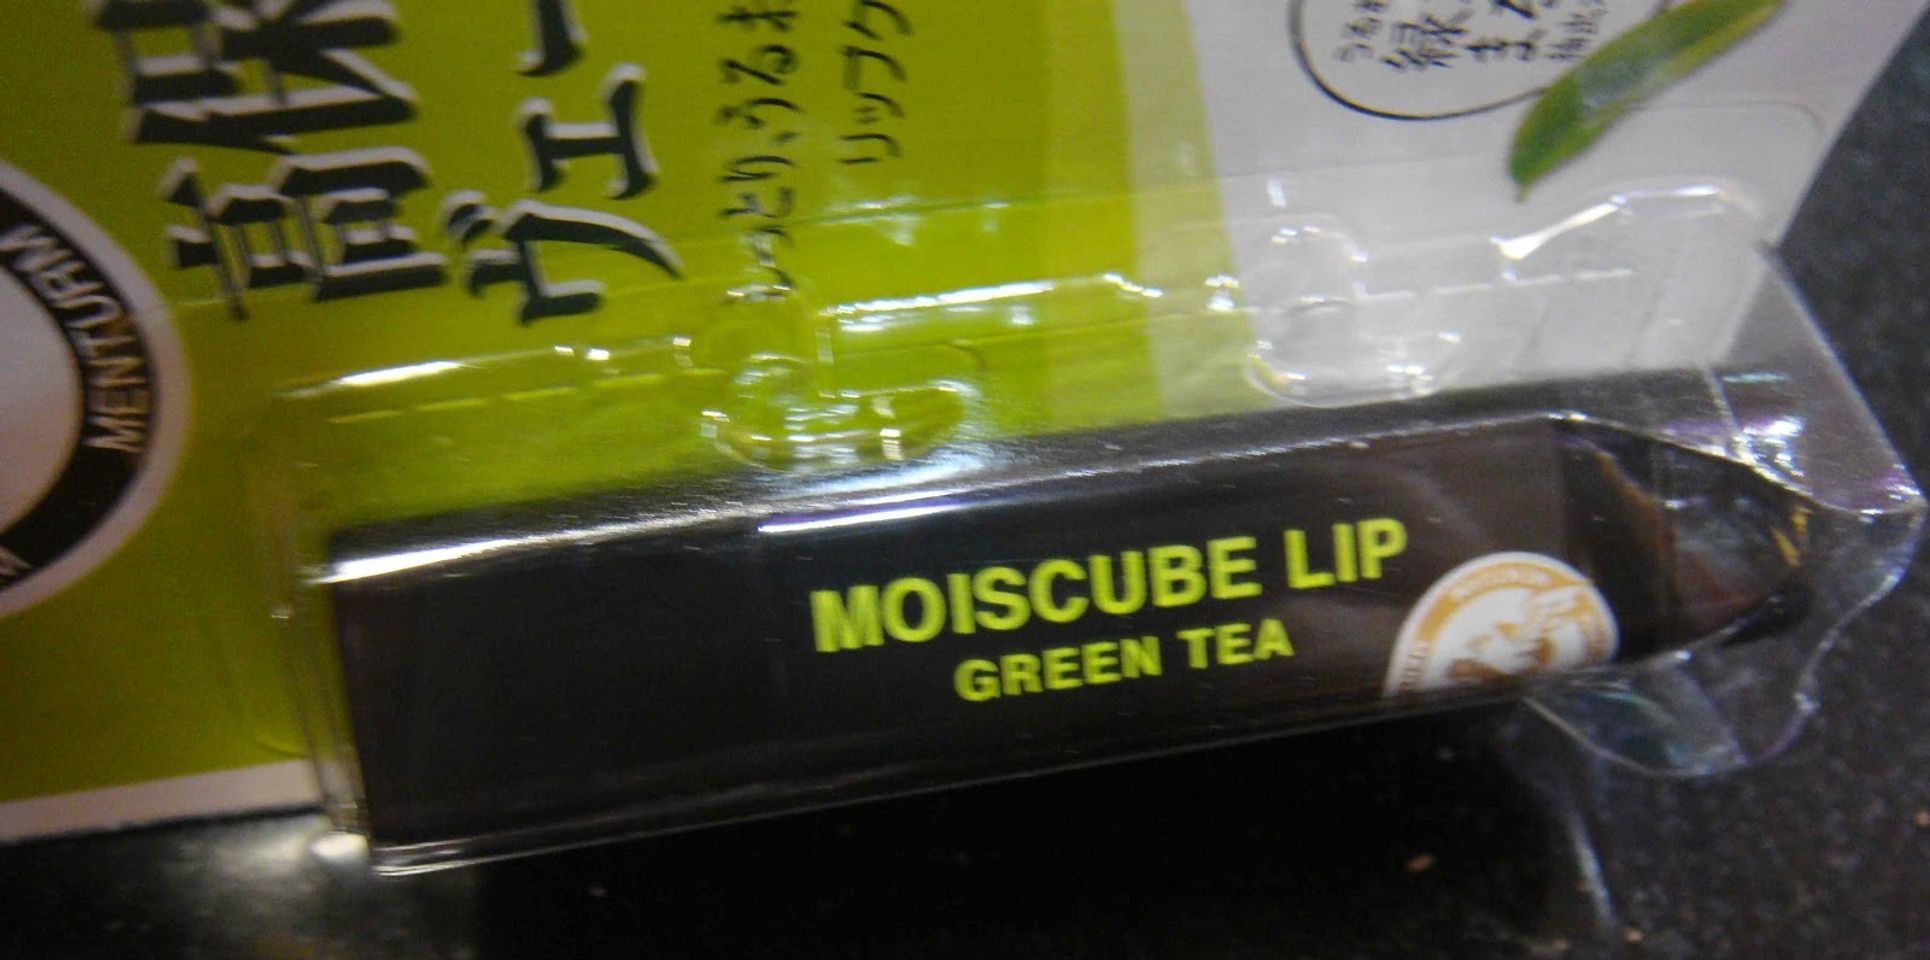 Son dưỡng môi trà xanh Moiscube Lip Greentea  3